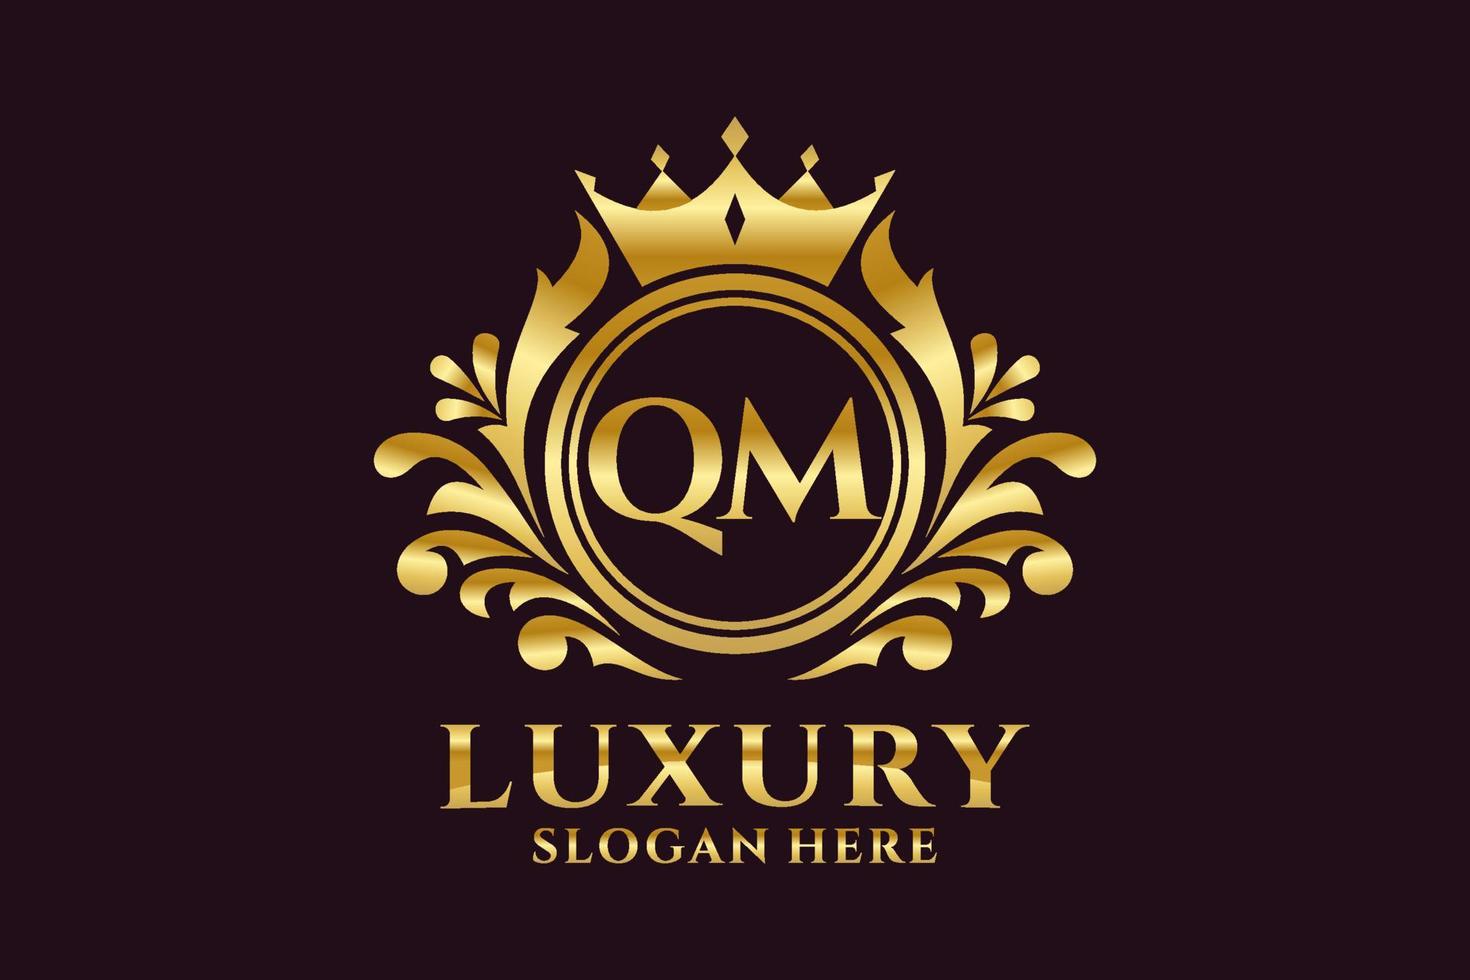 modèle initial de logo de luxe royal de lettre qm dans l'art vectoriel pour des projets de marque luxueux et d'autres illustrations vectorielles.